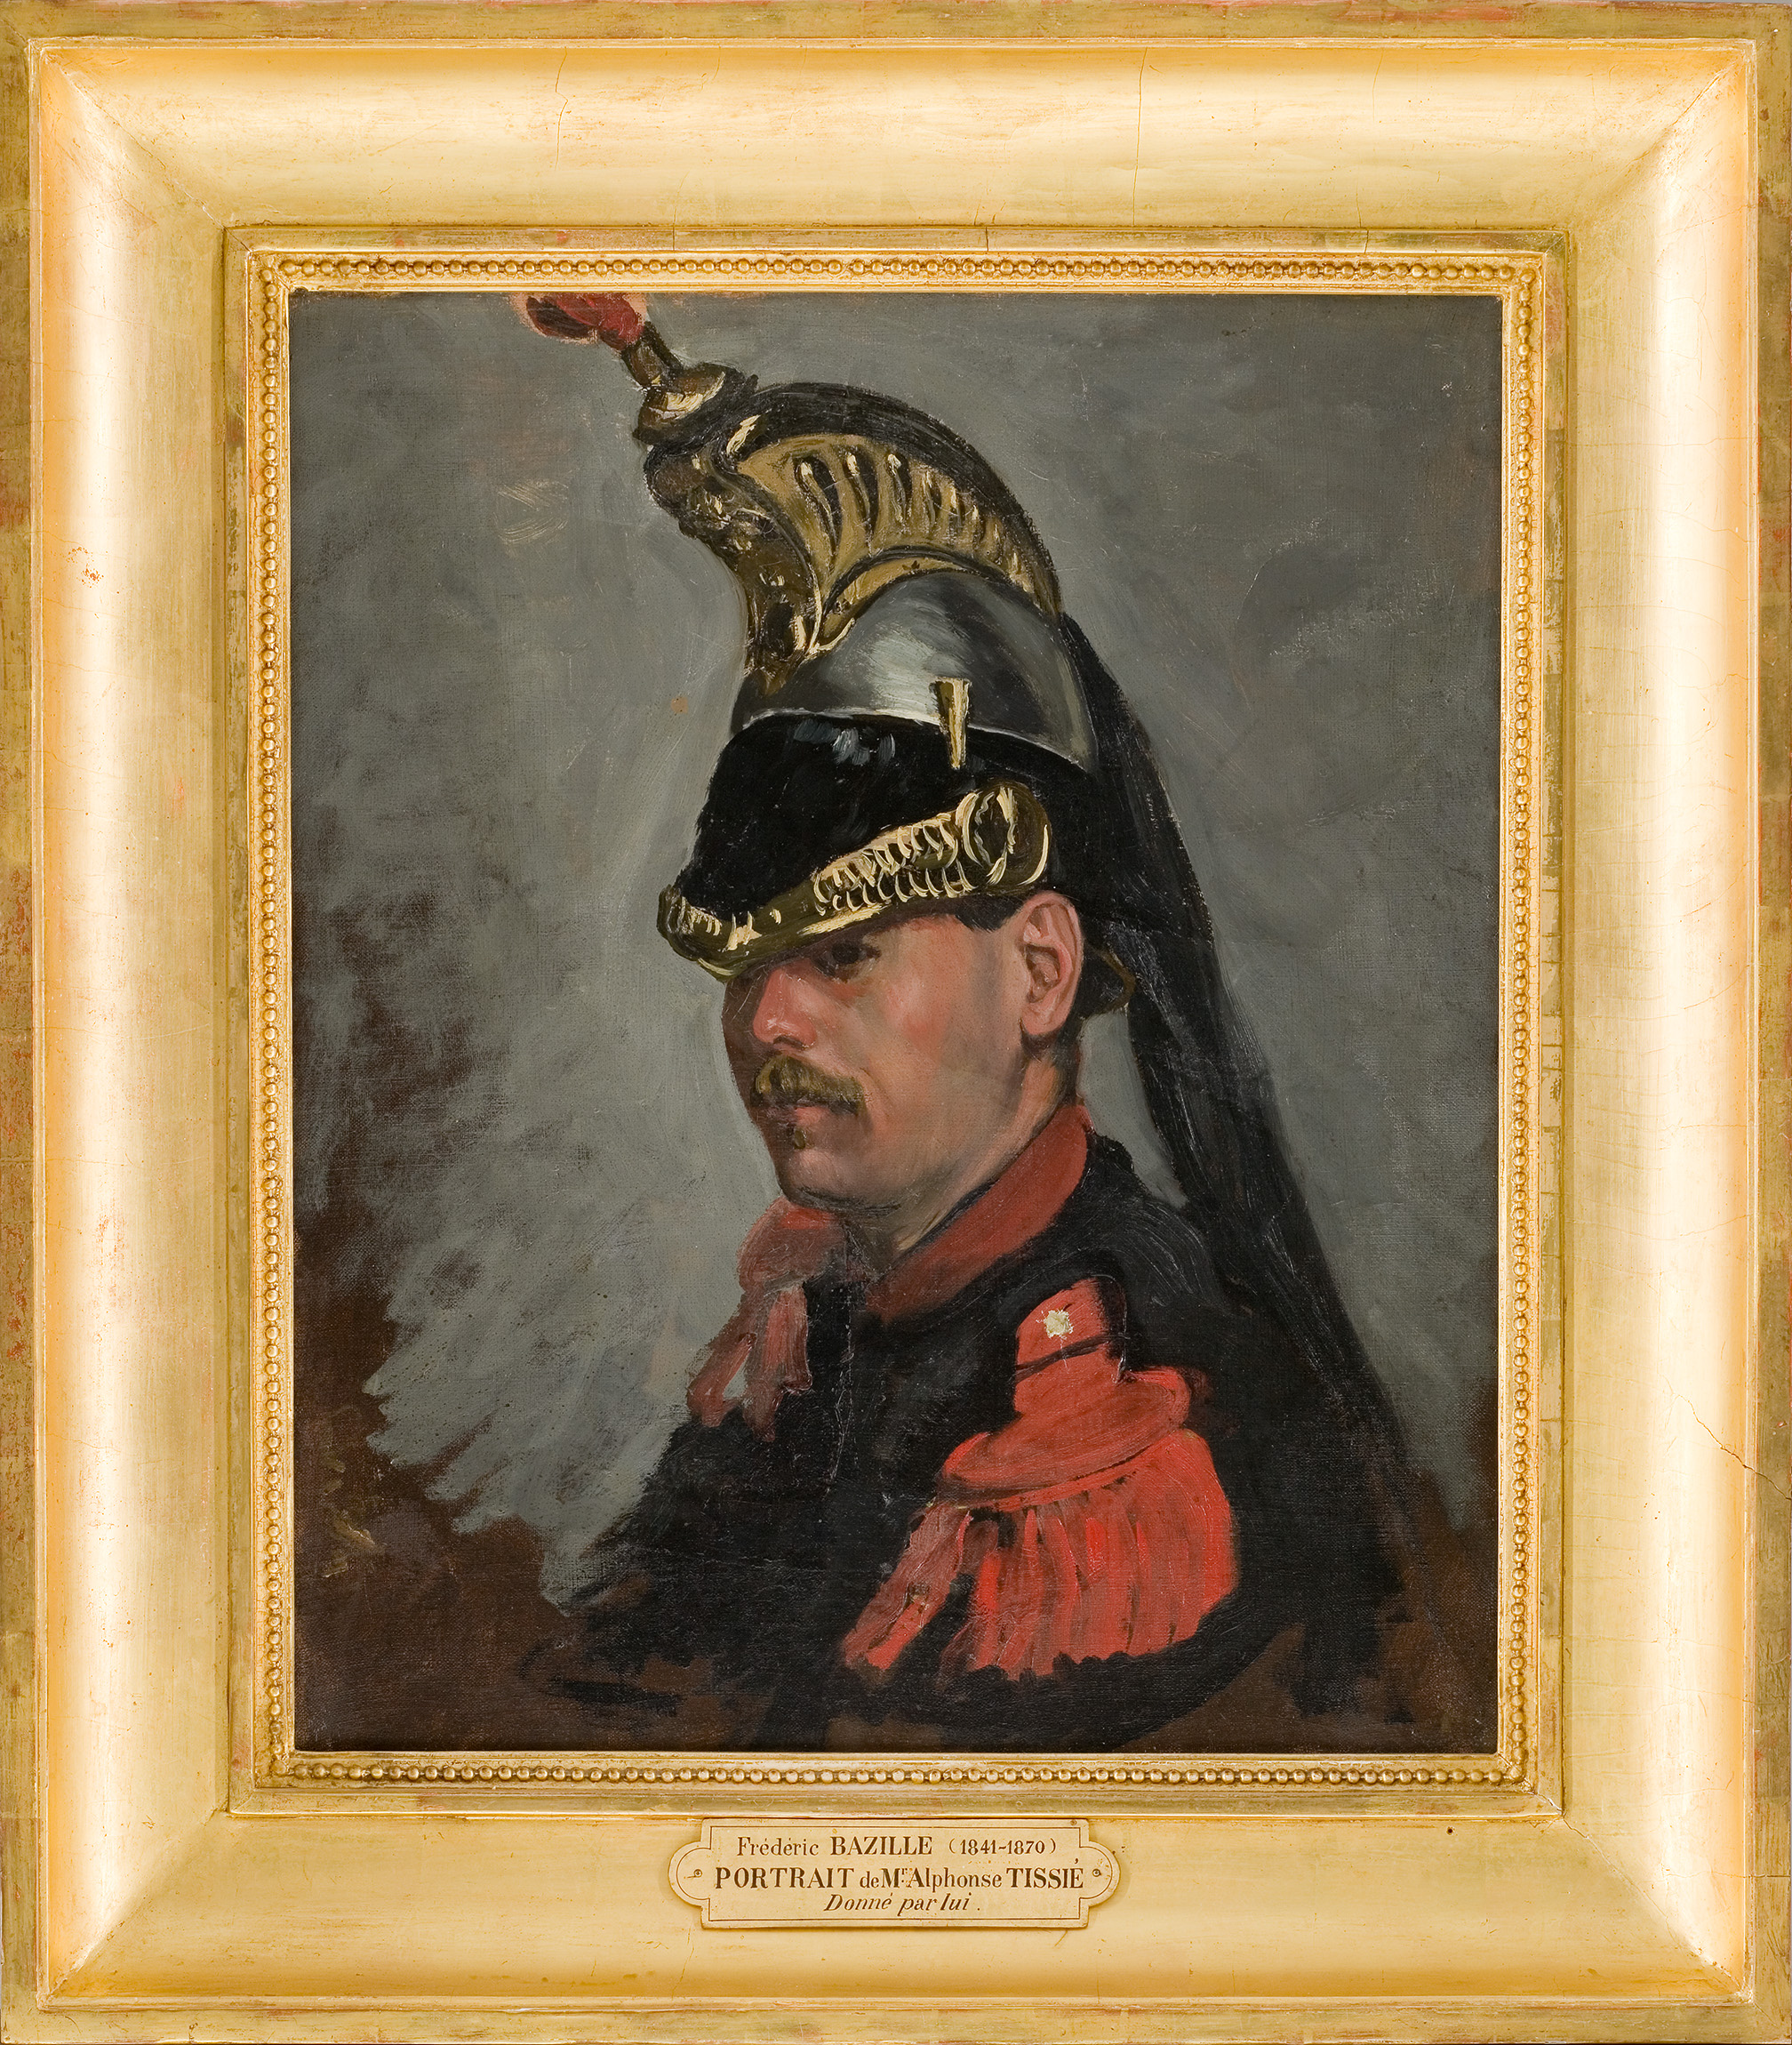 Portrait de M. Alphonse Tissié en cuirassier